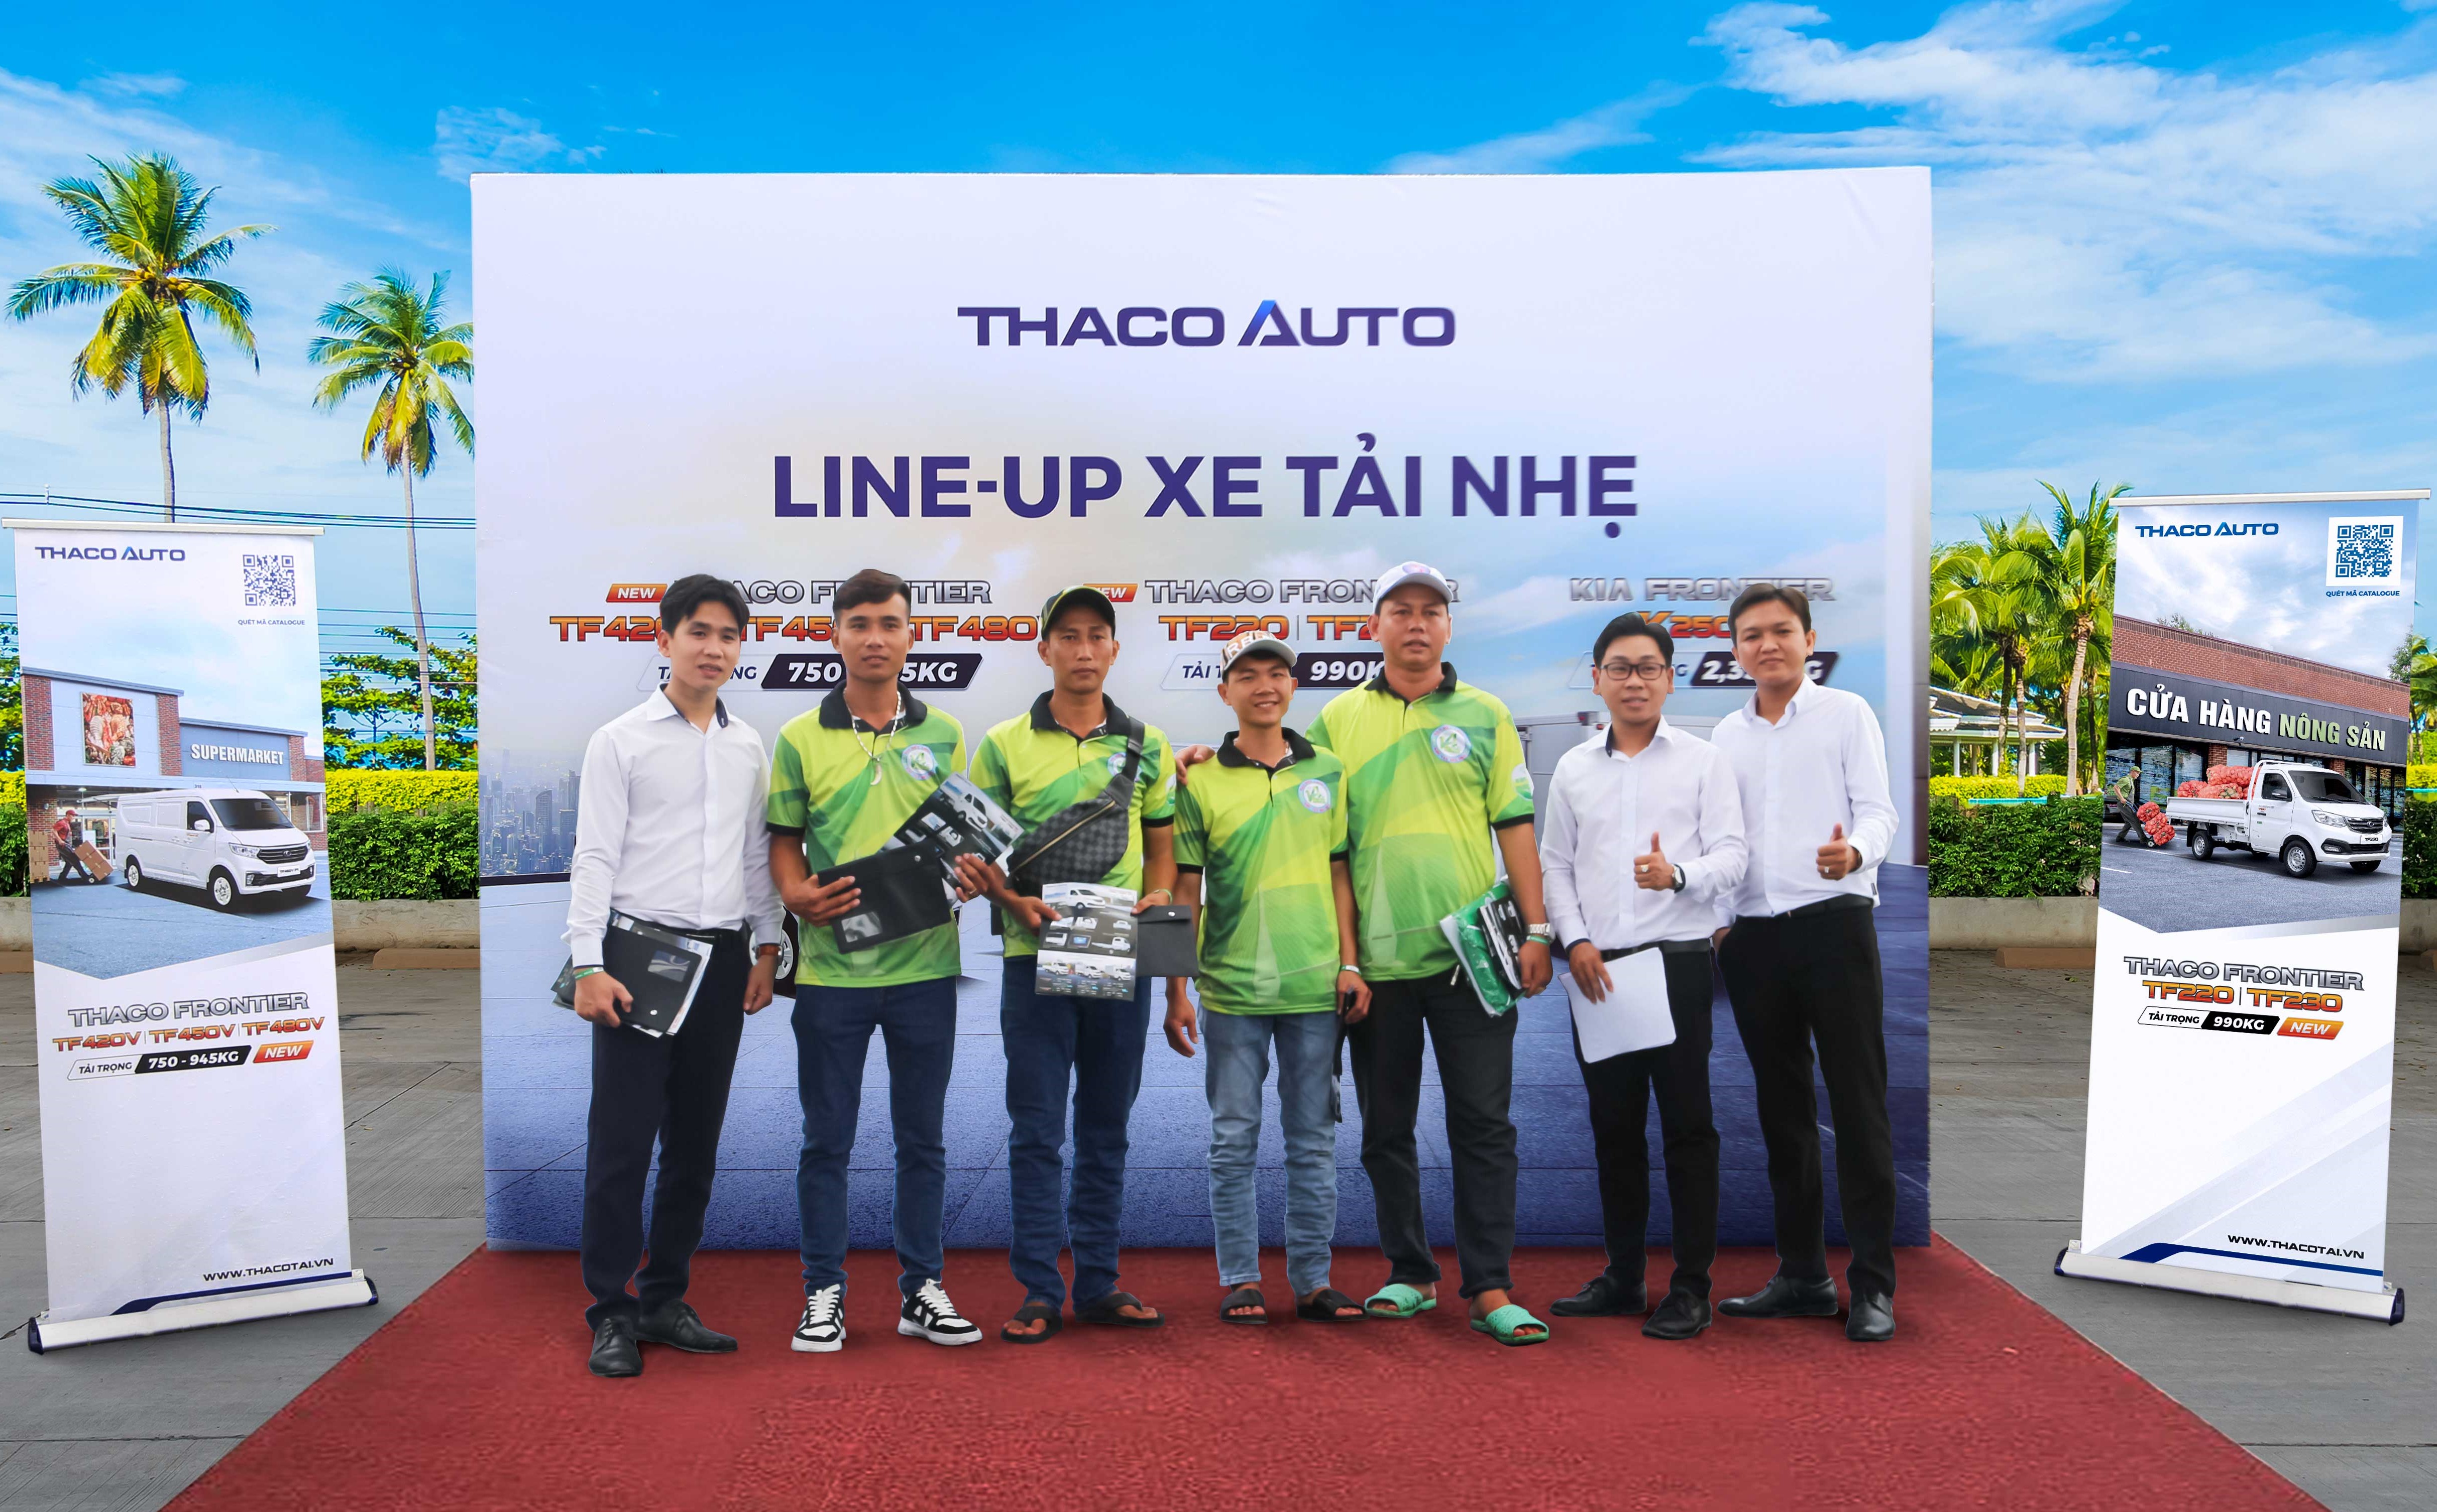 THACO AUTO đồng hành cùng sinh nhật "Bạn Hữu Đường Xa" - Cộng đồng lái xe lớn nhất Việt Nam